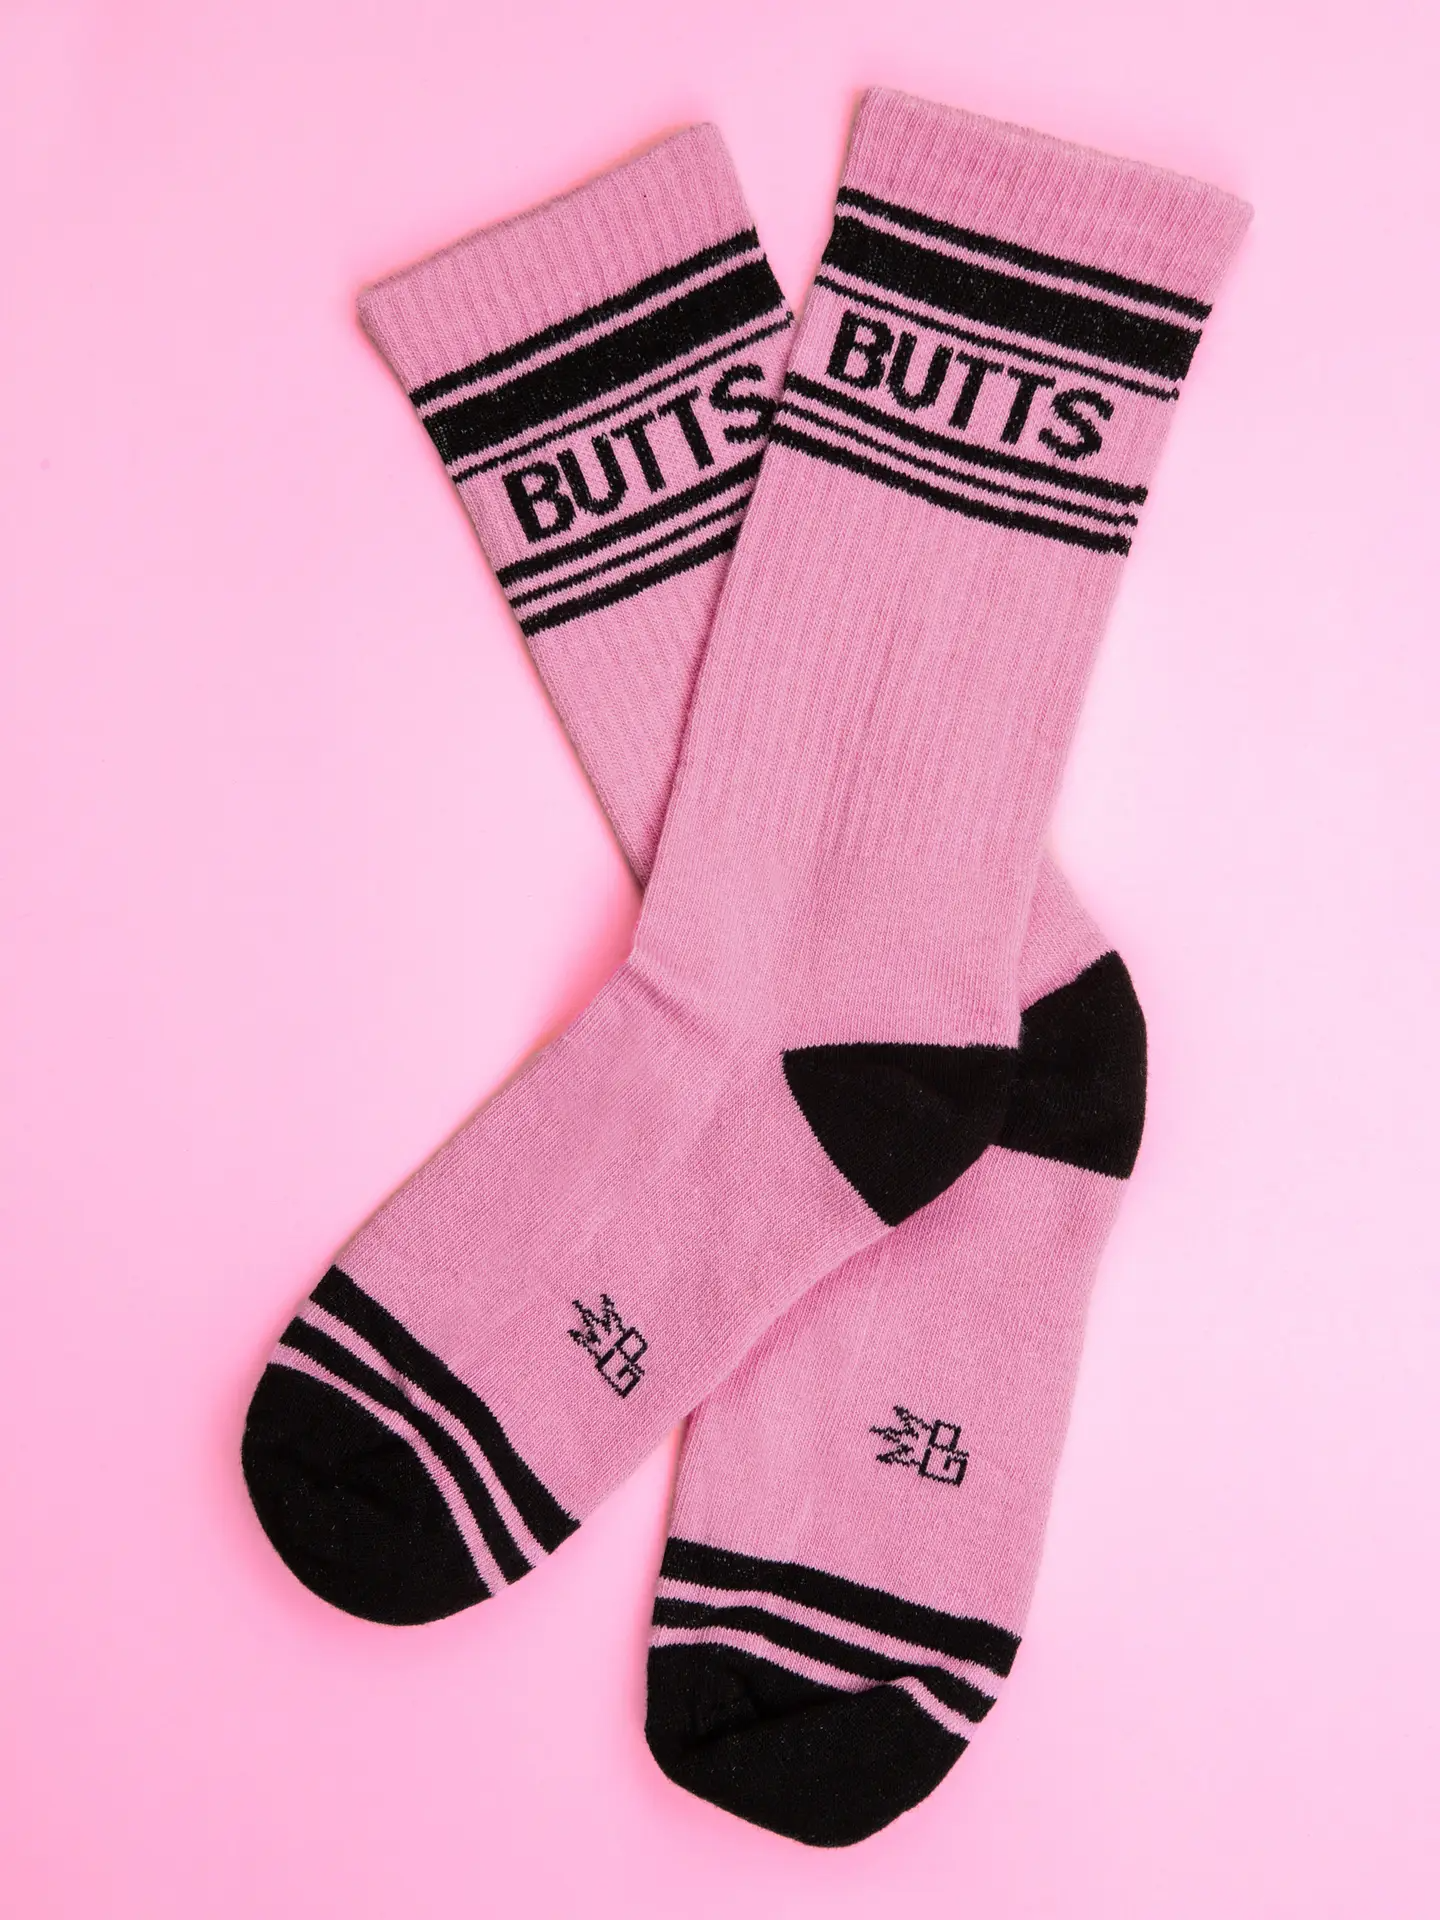 Butts - Unisex Socks